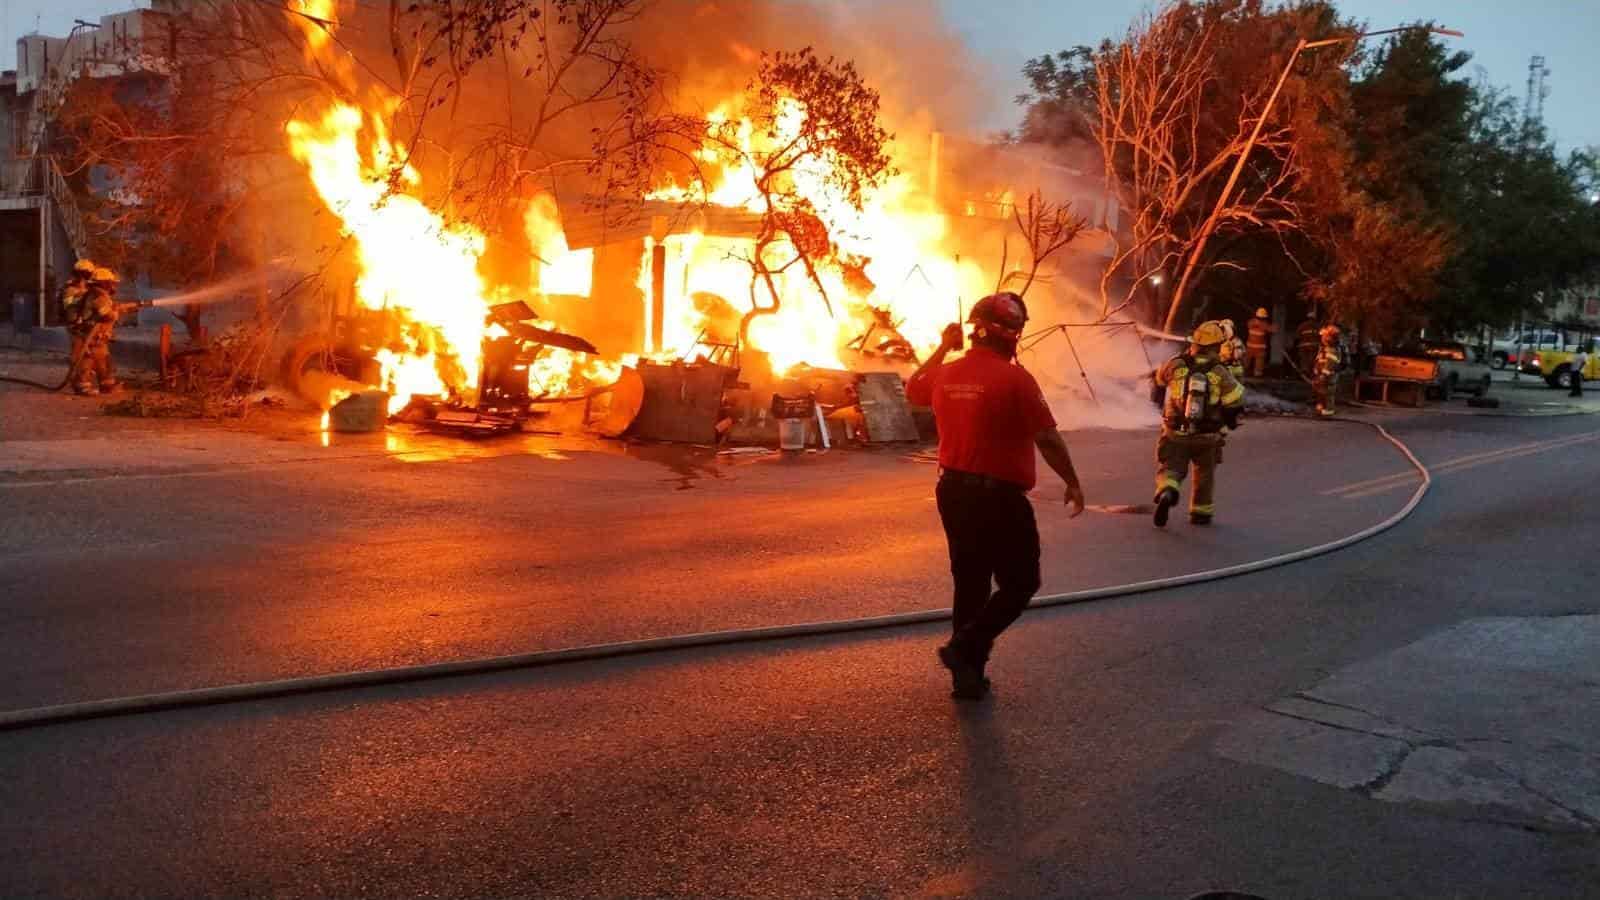 El incendio de dos domicilios movilizó a elementos de auxilio de diversas corporaciones, quienes evacuaron a ochos personas, sin que se reportaran lesionados, ayer en la Colonia Moderna, municipio de Monterrey.